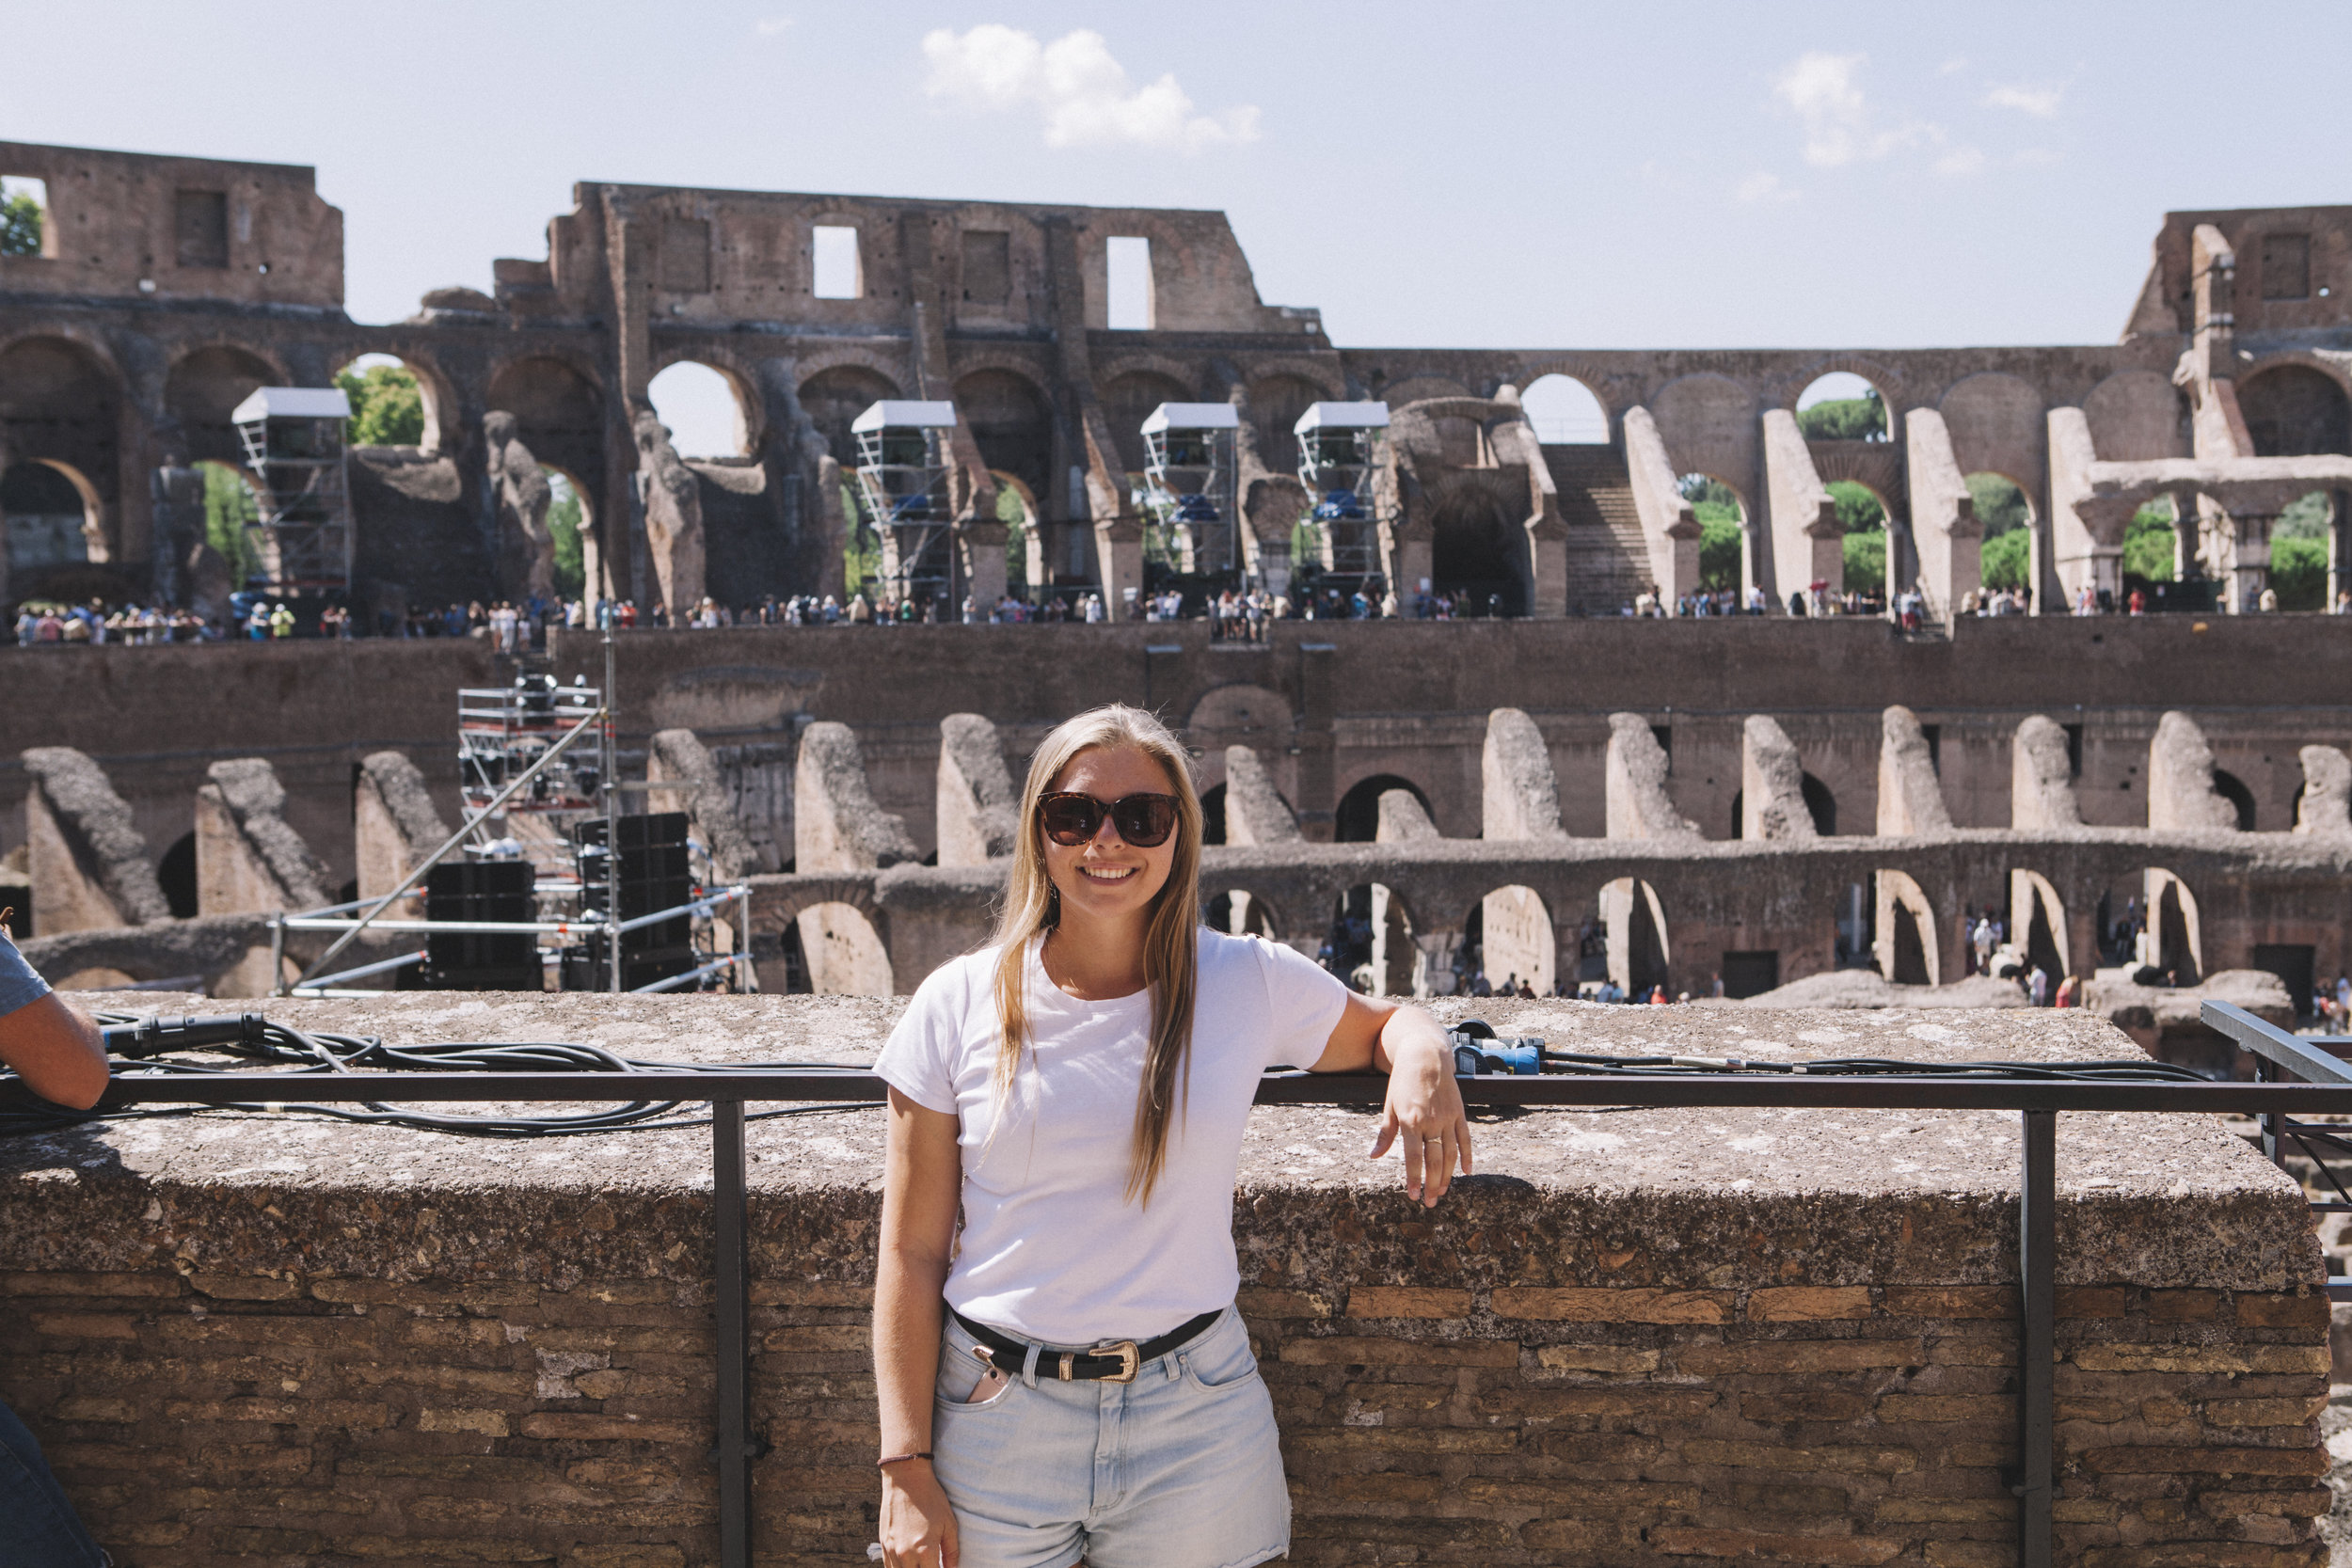 Colosseum_1458.jpg